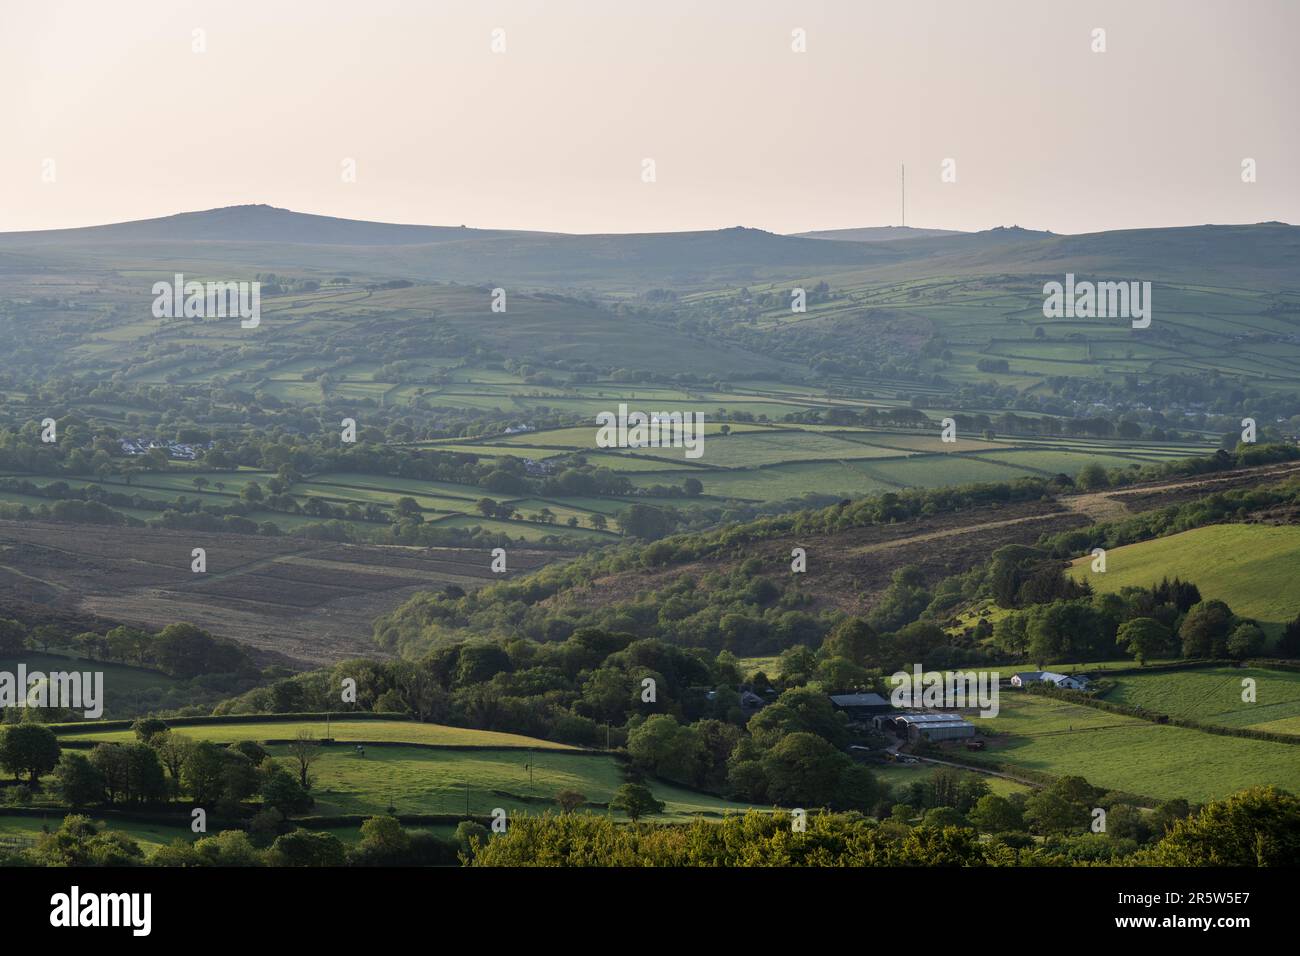 Die Morgensonne scheint auf dem Tavy Valley und den Hügeln von Dartmoor, einschließlich Roos Tor, Great Staple Tor und dem North Hessary Tor Sender in Devon. Stockfoto